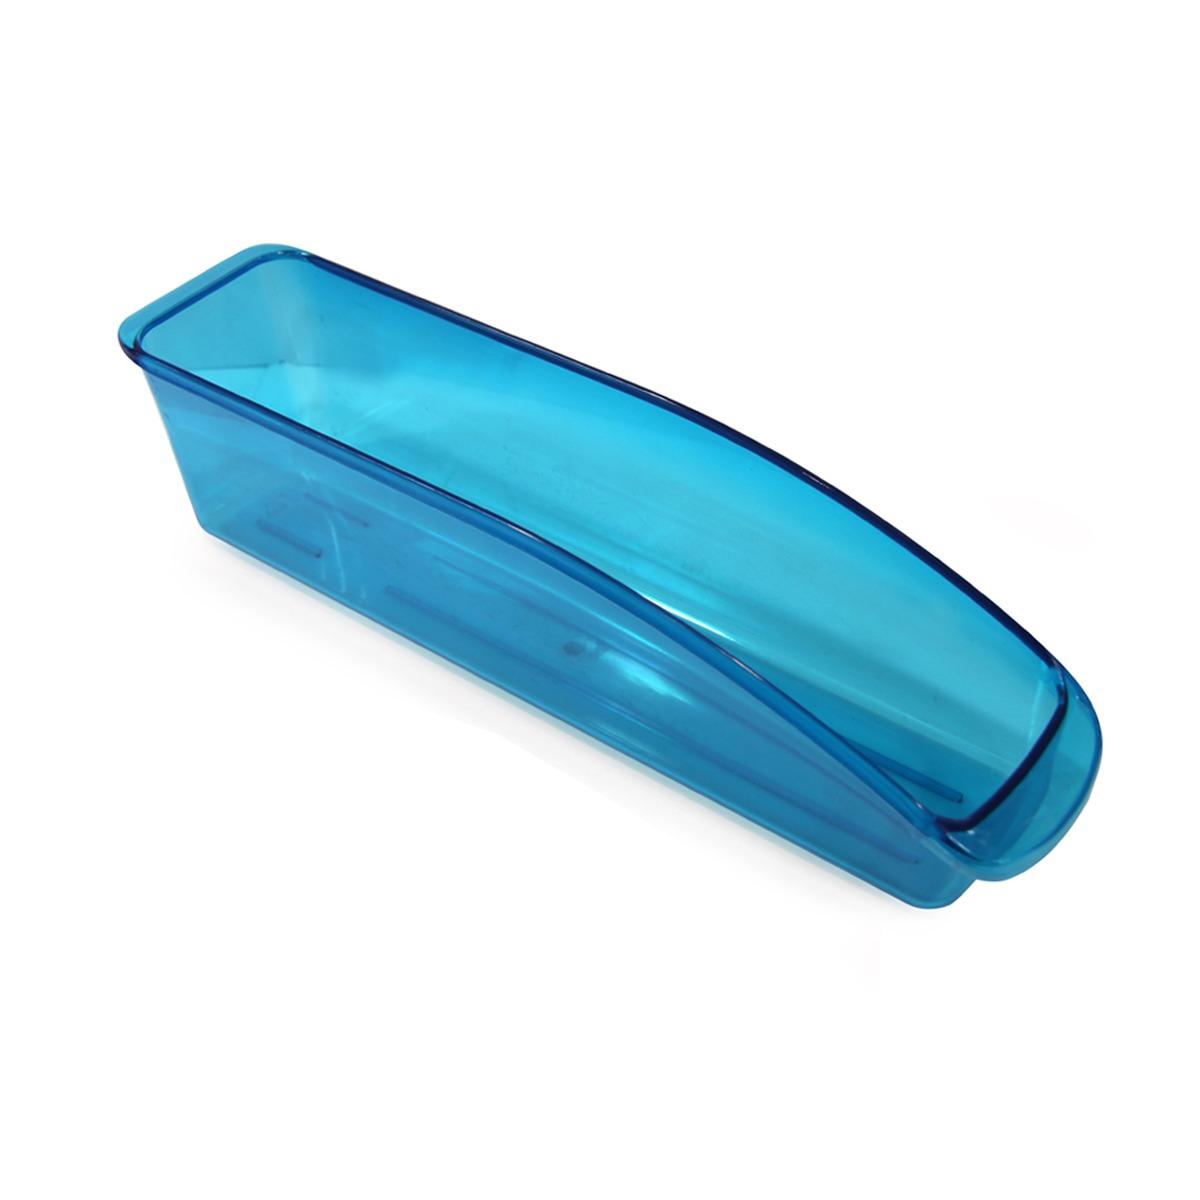 Bac de rangement pour réfrigérateur - 33 x 7 cm - Bleu